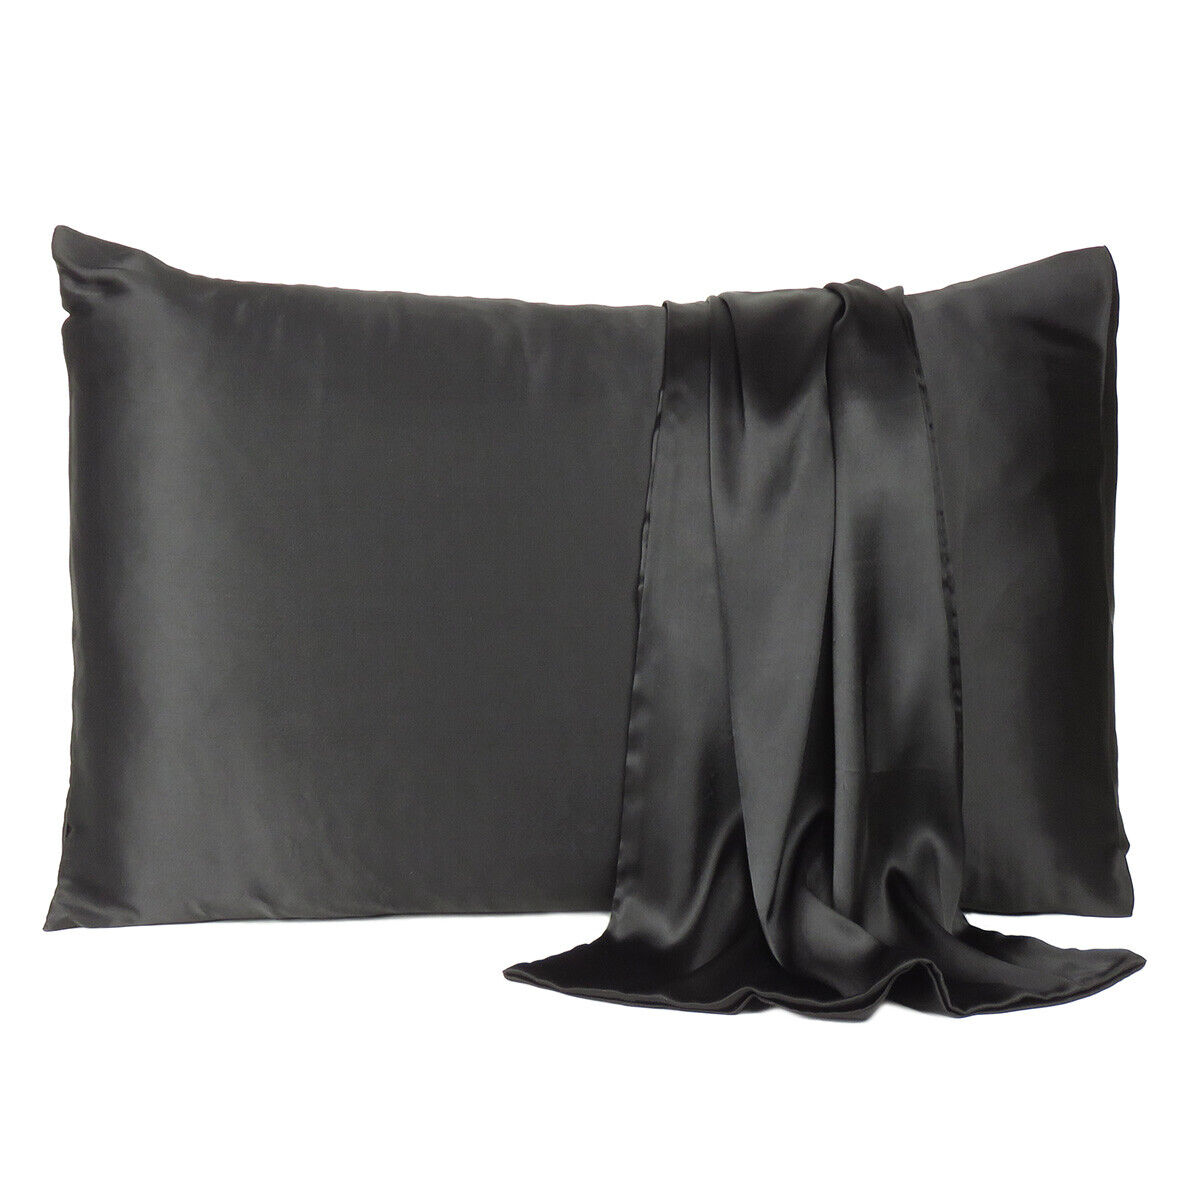 Luxurious Satin Silk Pillowcase Soft Bedding Standard Queen King Pillow Cover